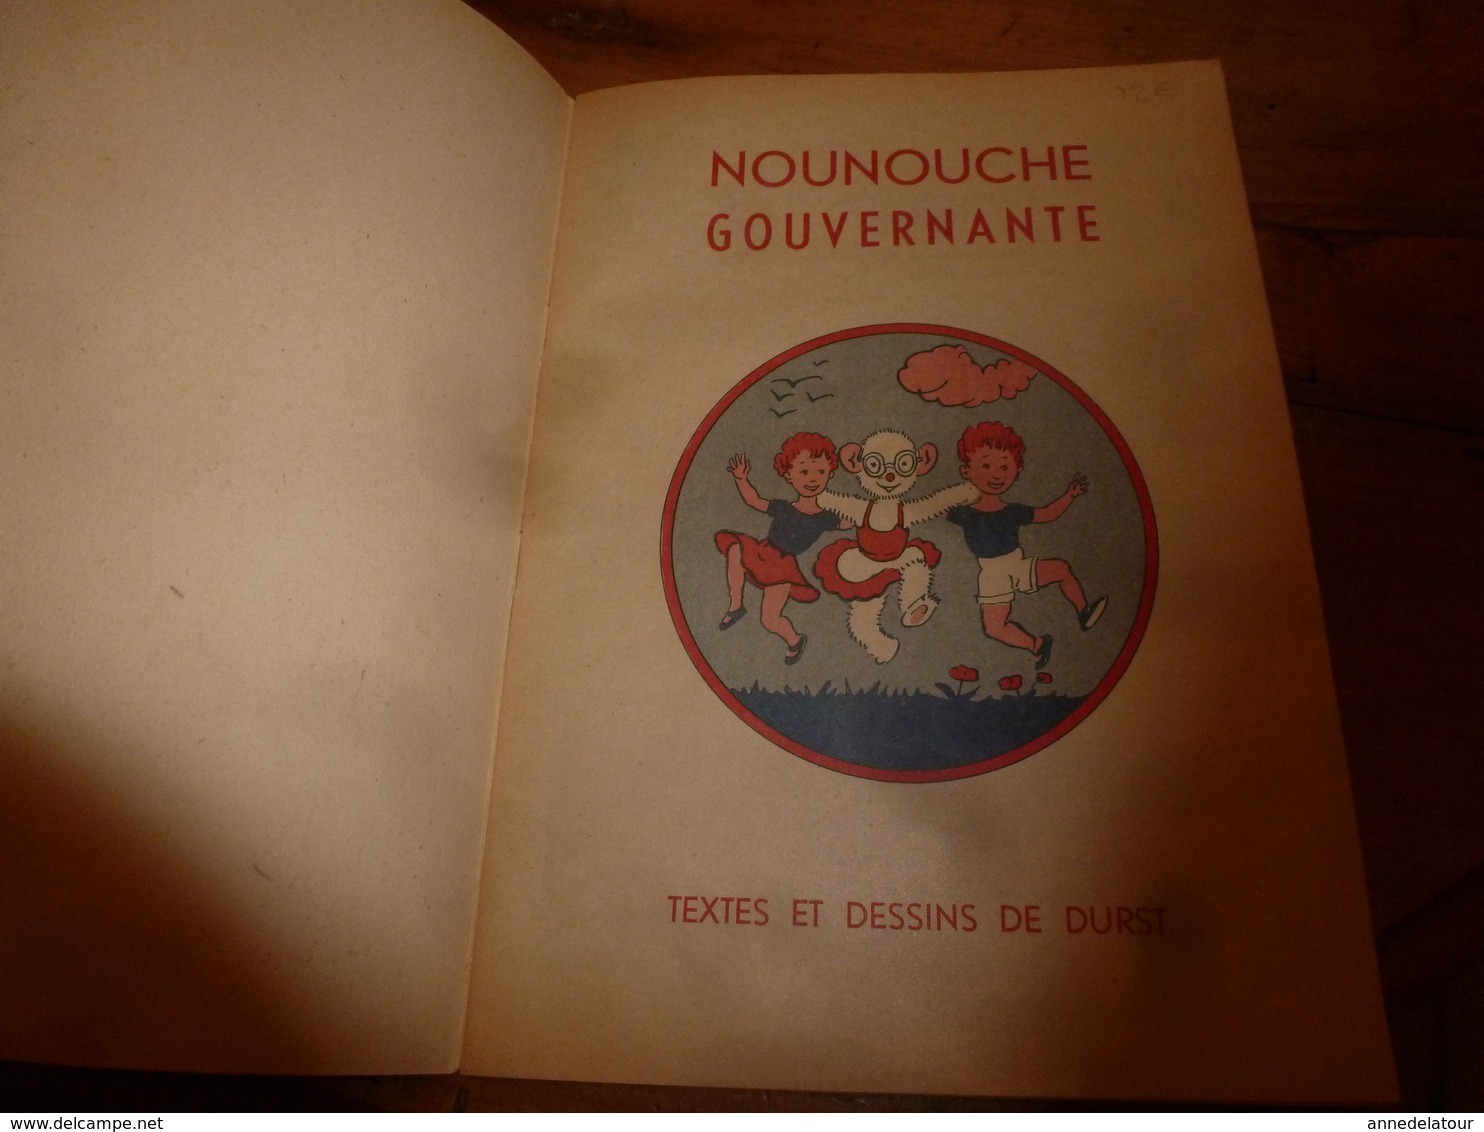 1953 NOUNOUCHE  gouvernante,   texte et dessins de DURST